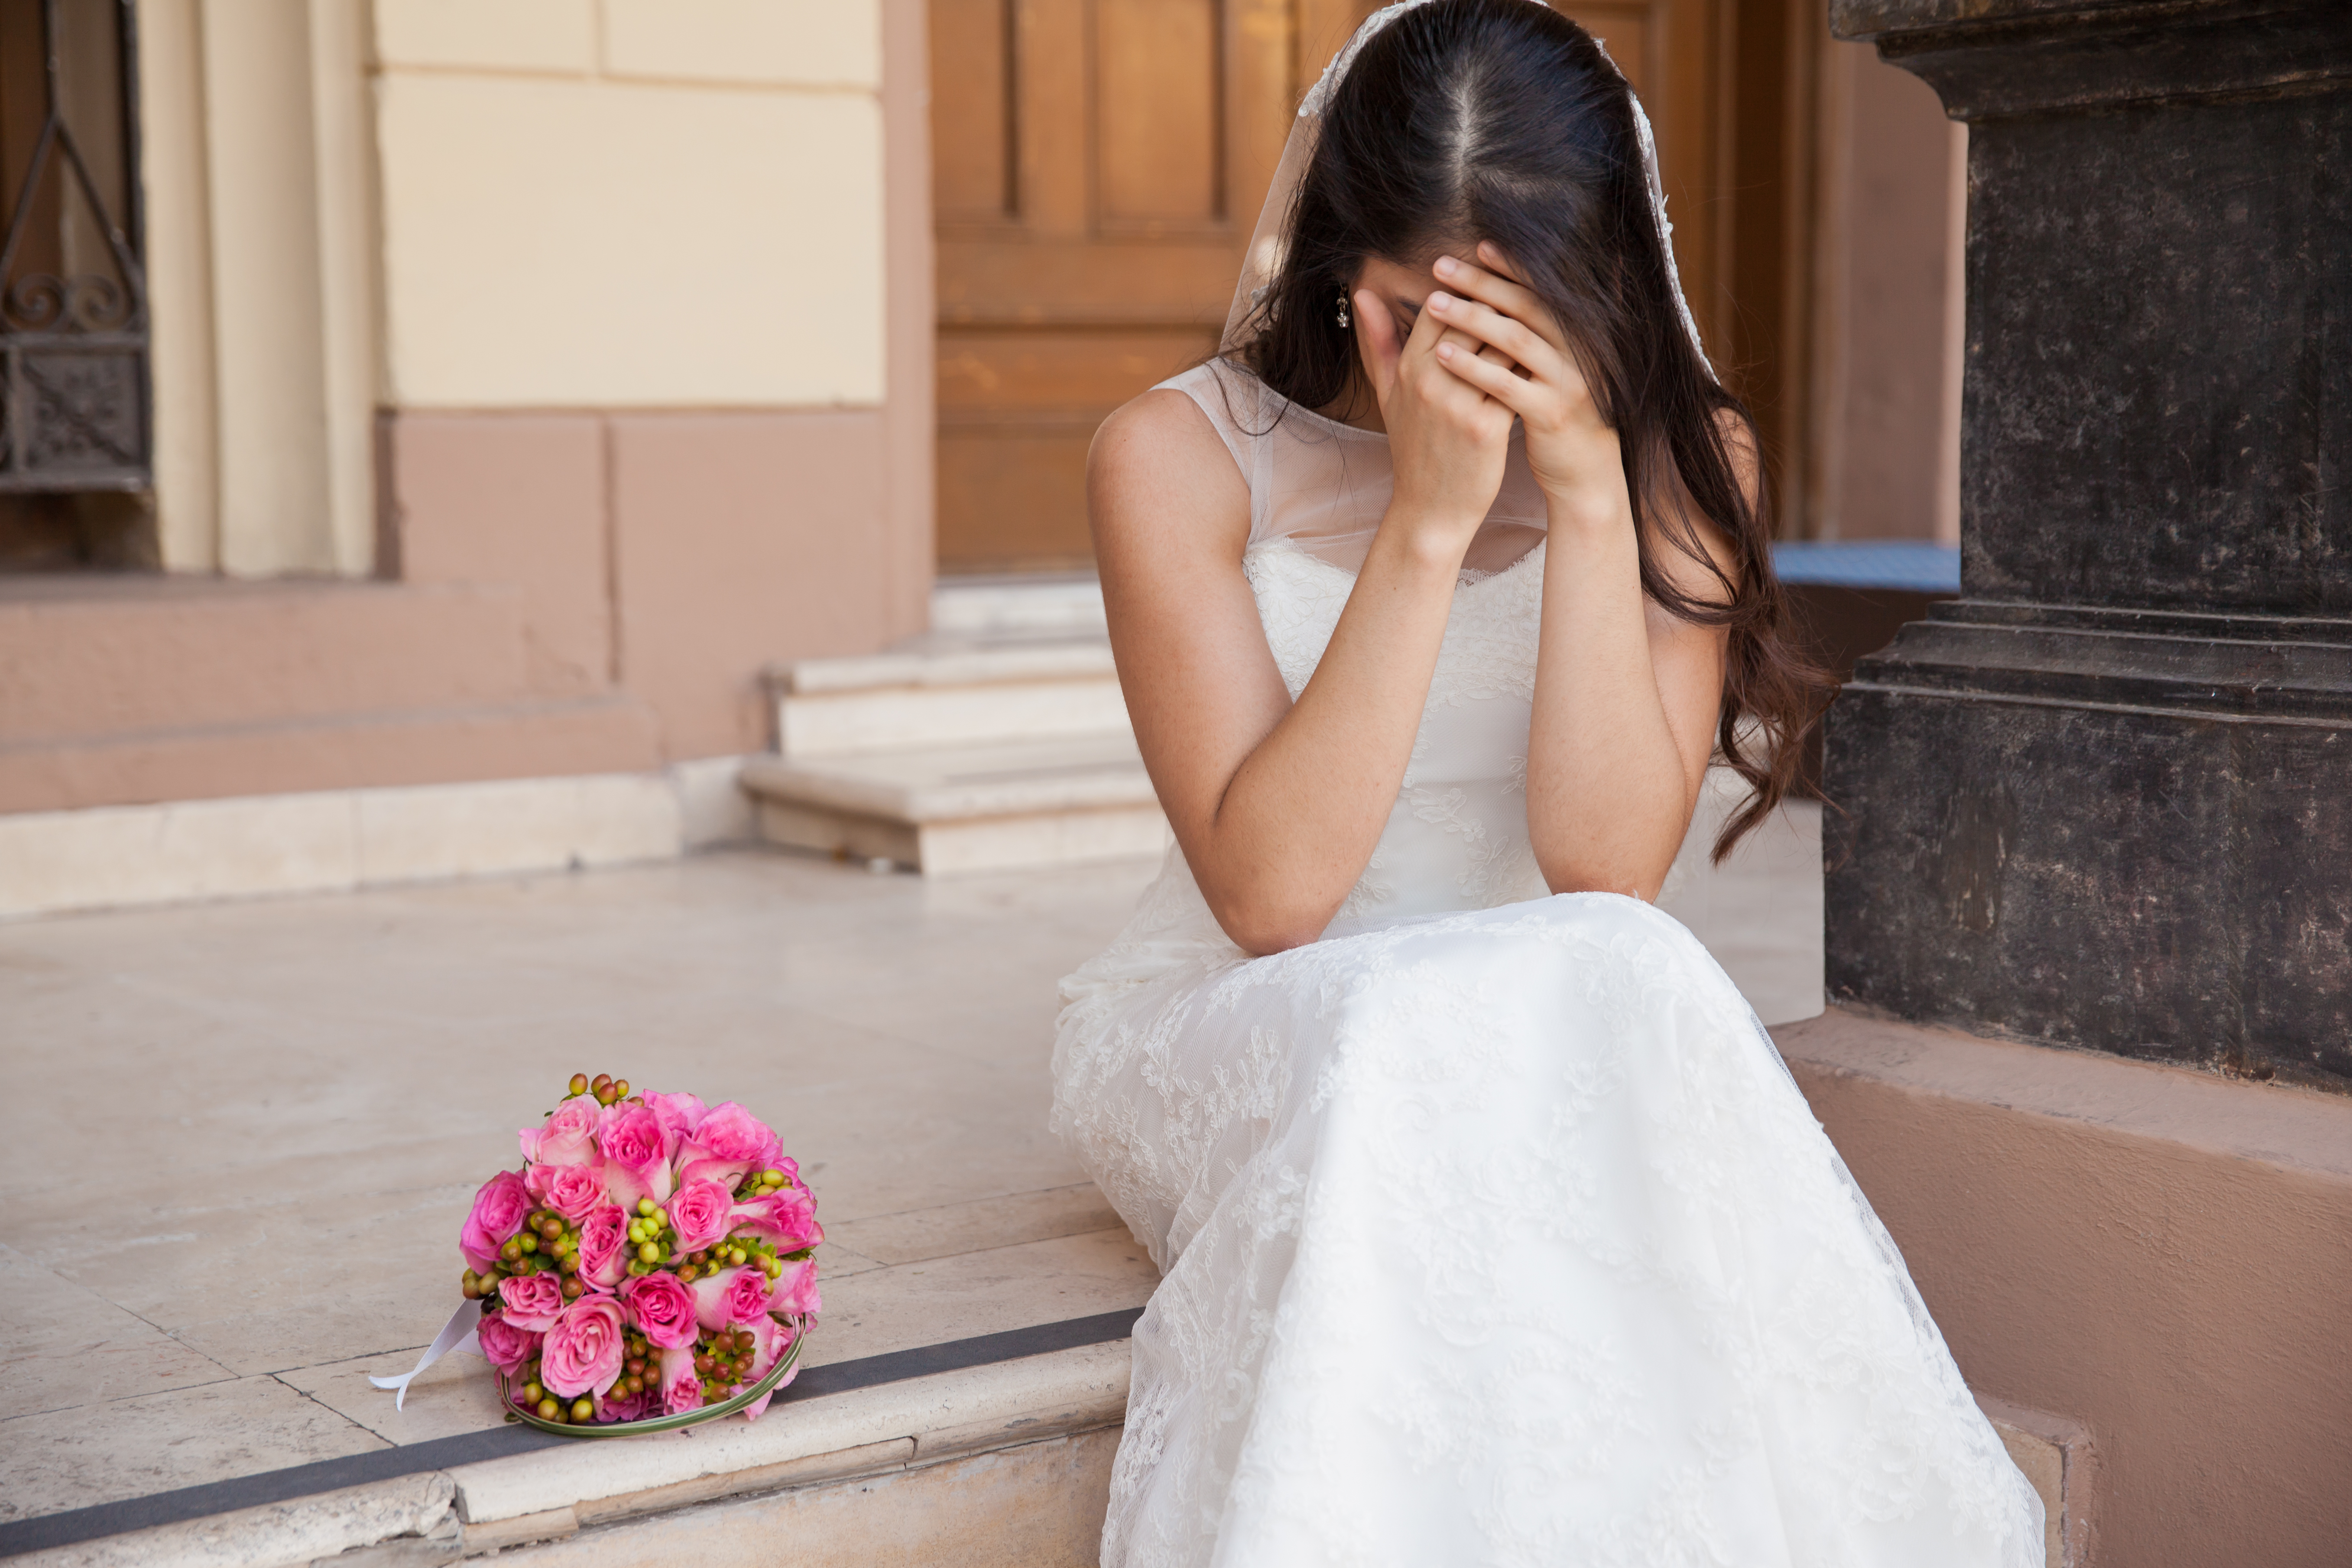 Une mariée en pleurs | Source : Shutterstock